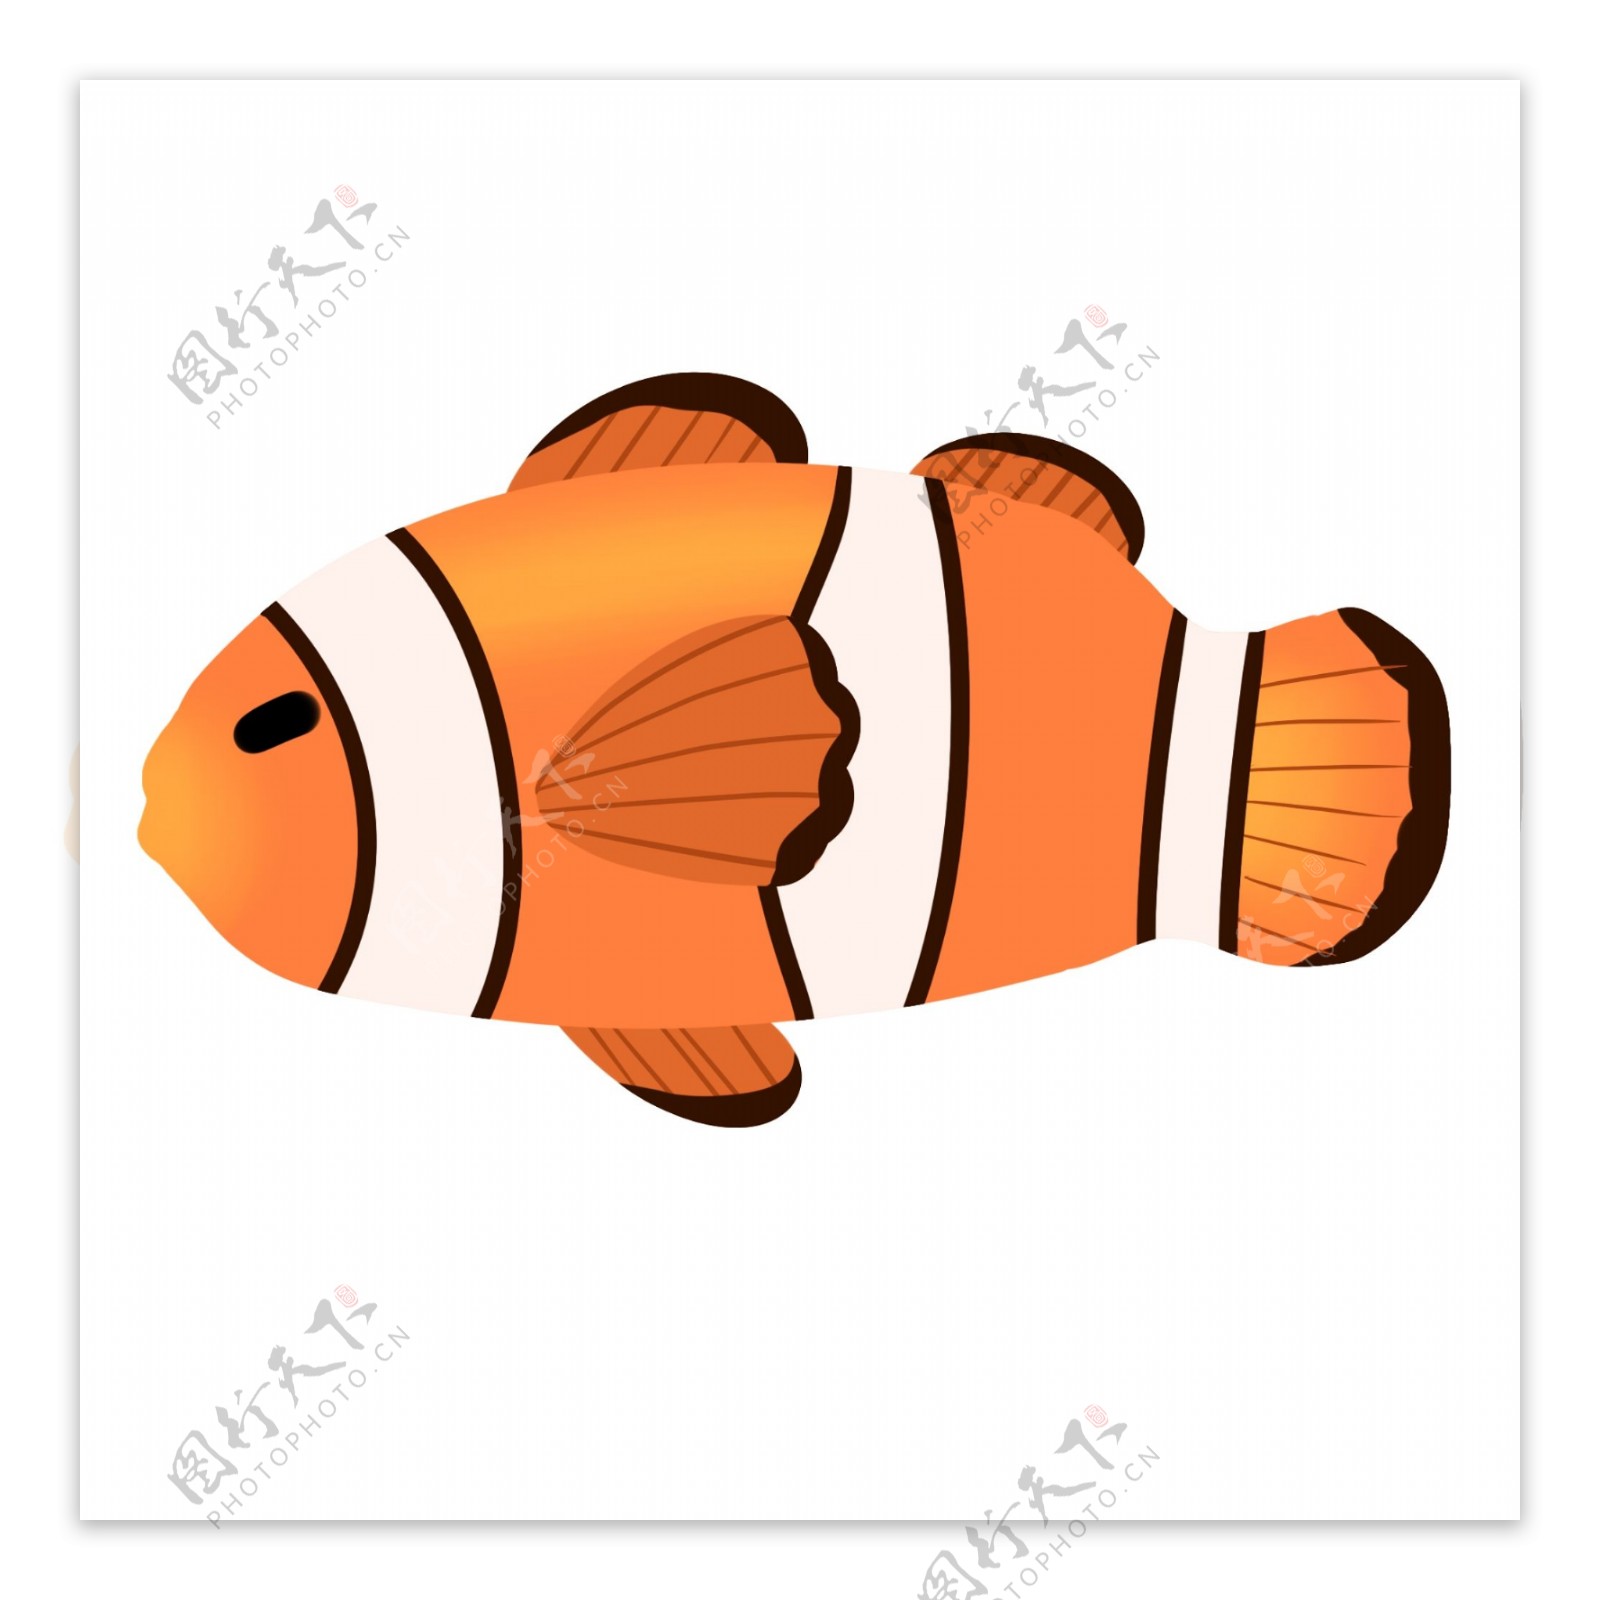 海洋生物小丑鱼